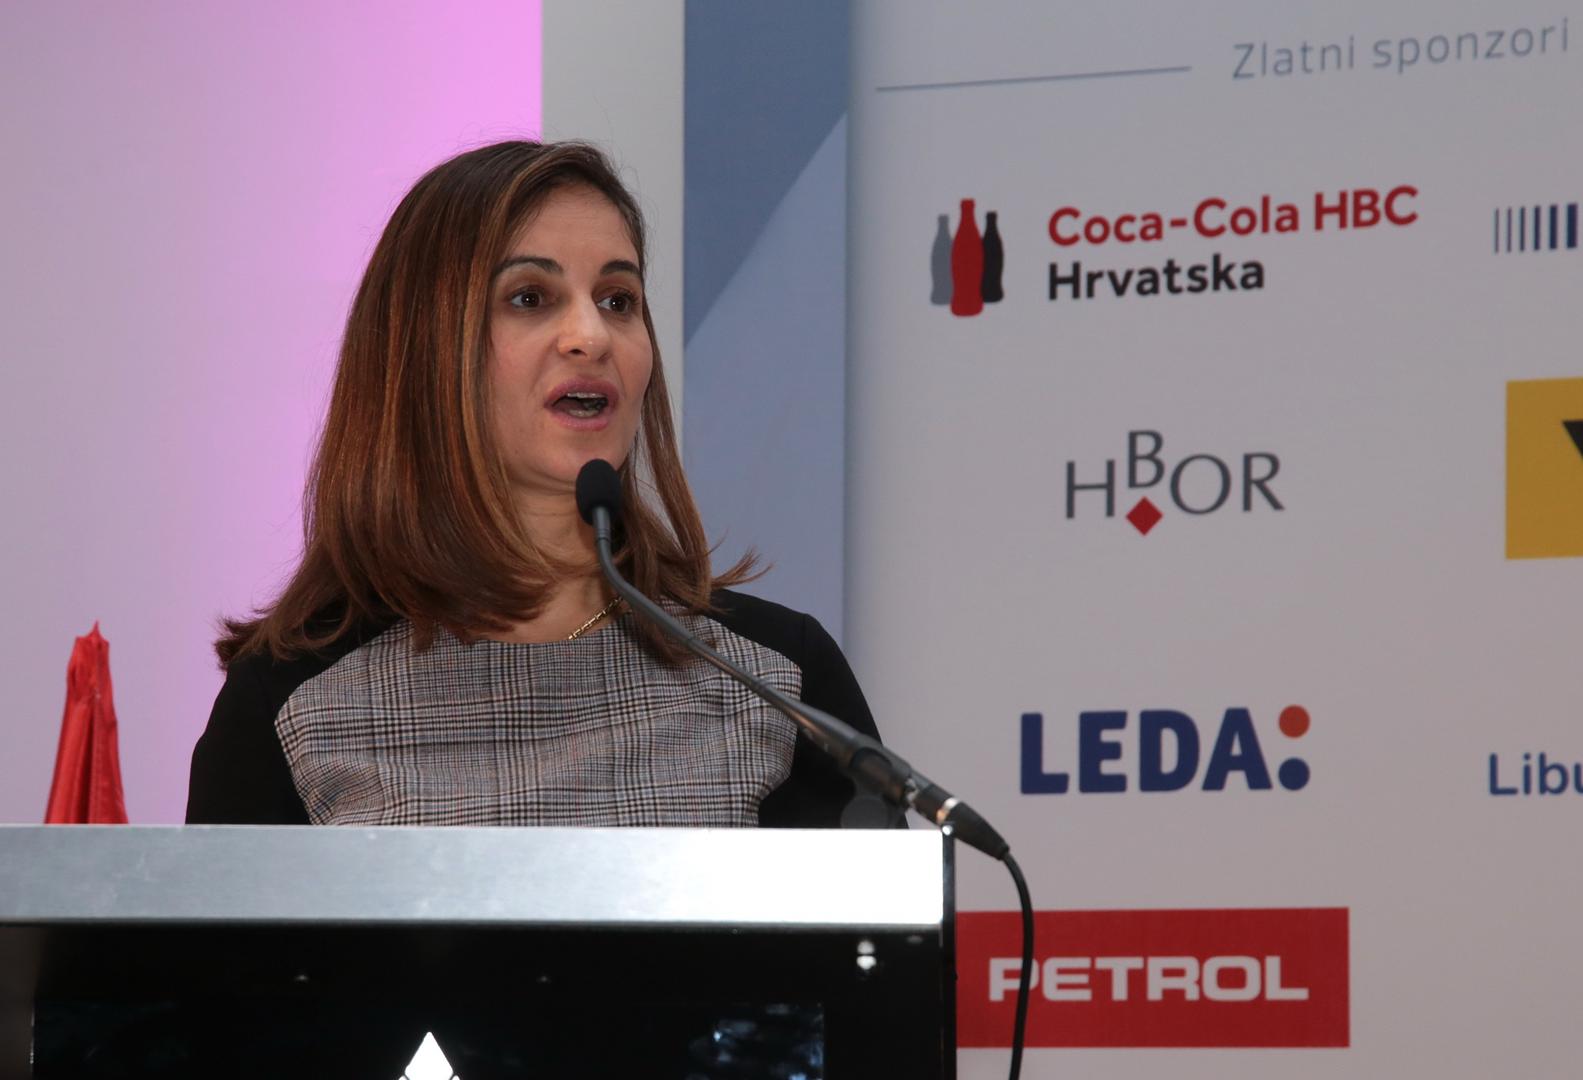 Mirjana Brlečić Bujanić, rukovoditeljica Službe za javne i regulatorne poslove u Coca-Coli HBC Adria, zahvalila je svim organizatorima akcija čišćenja